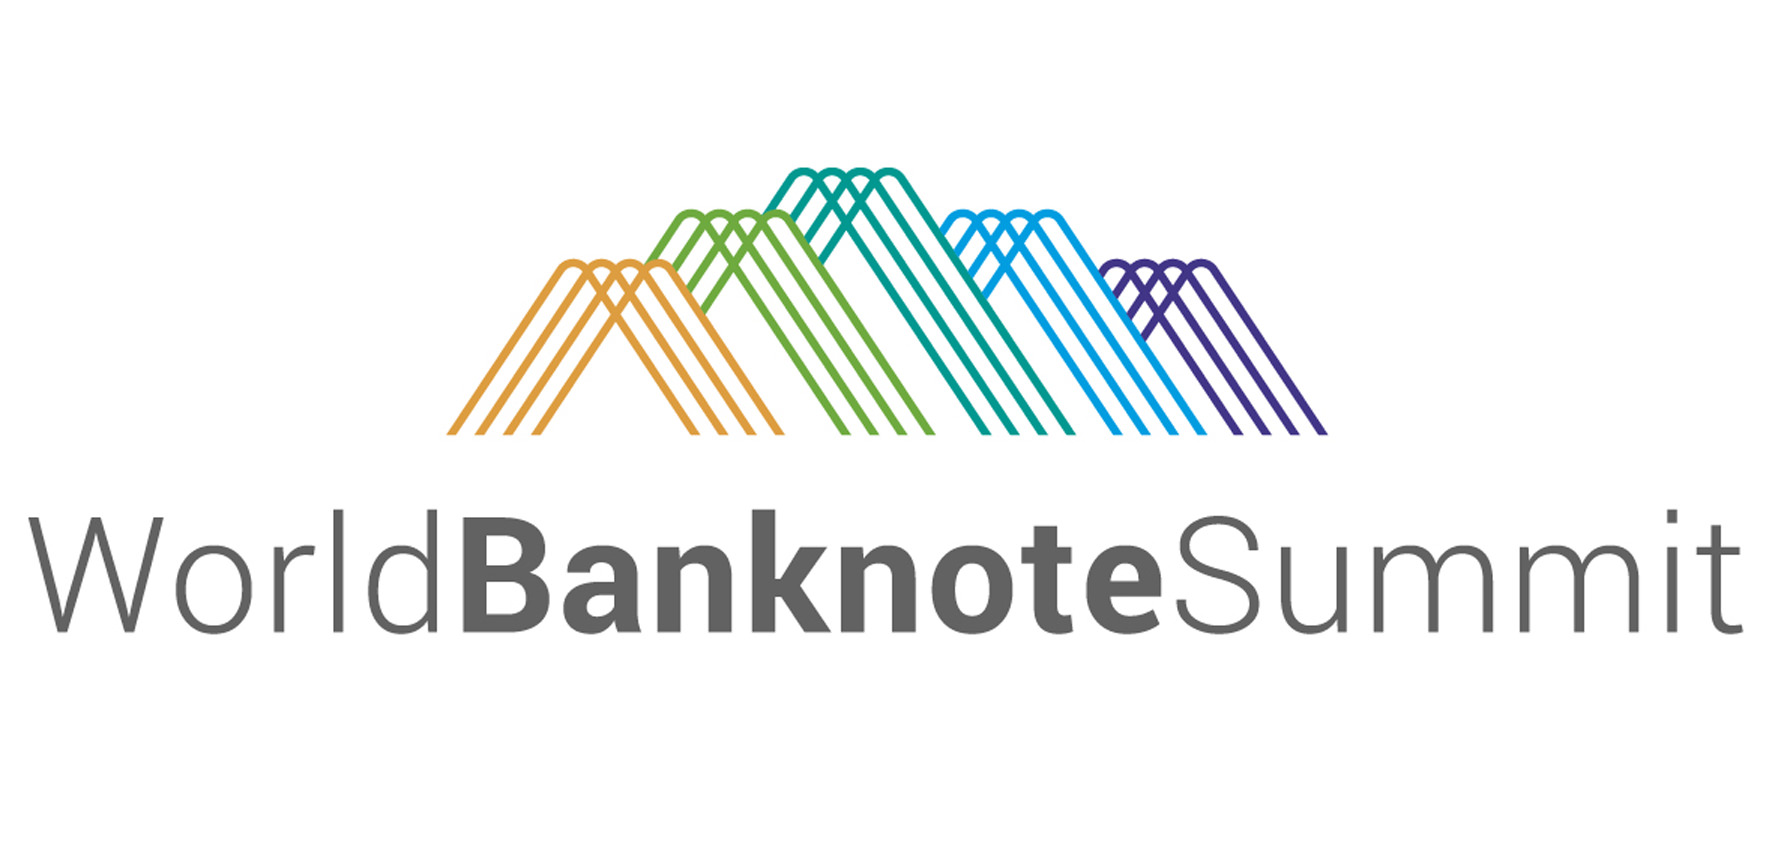 Впечатляющая повестка дня и инновационные форматы сессий на World Banknote Summit 2020